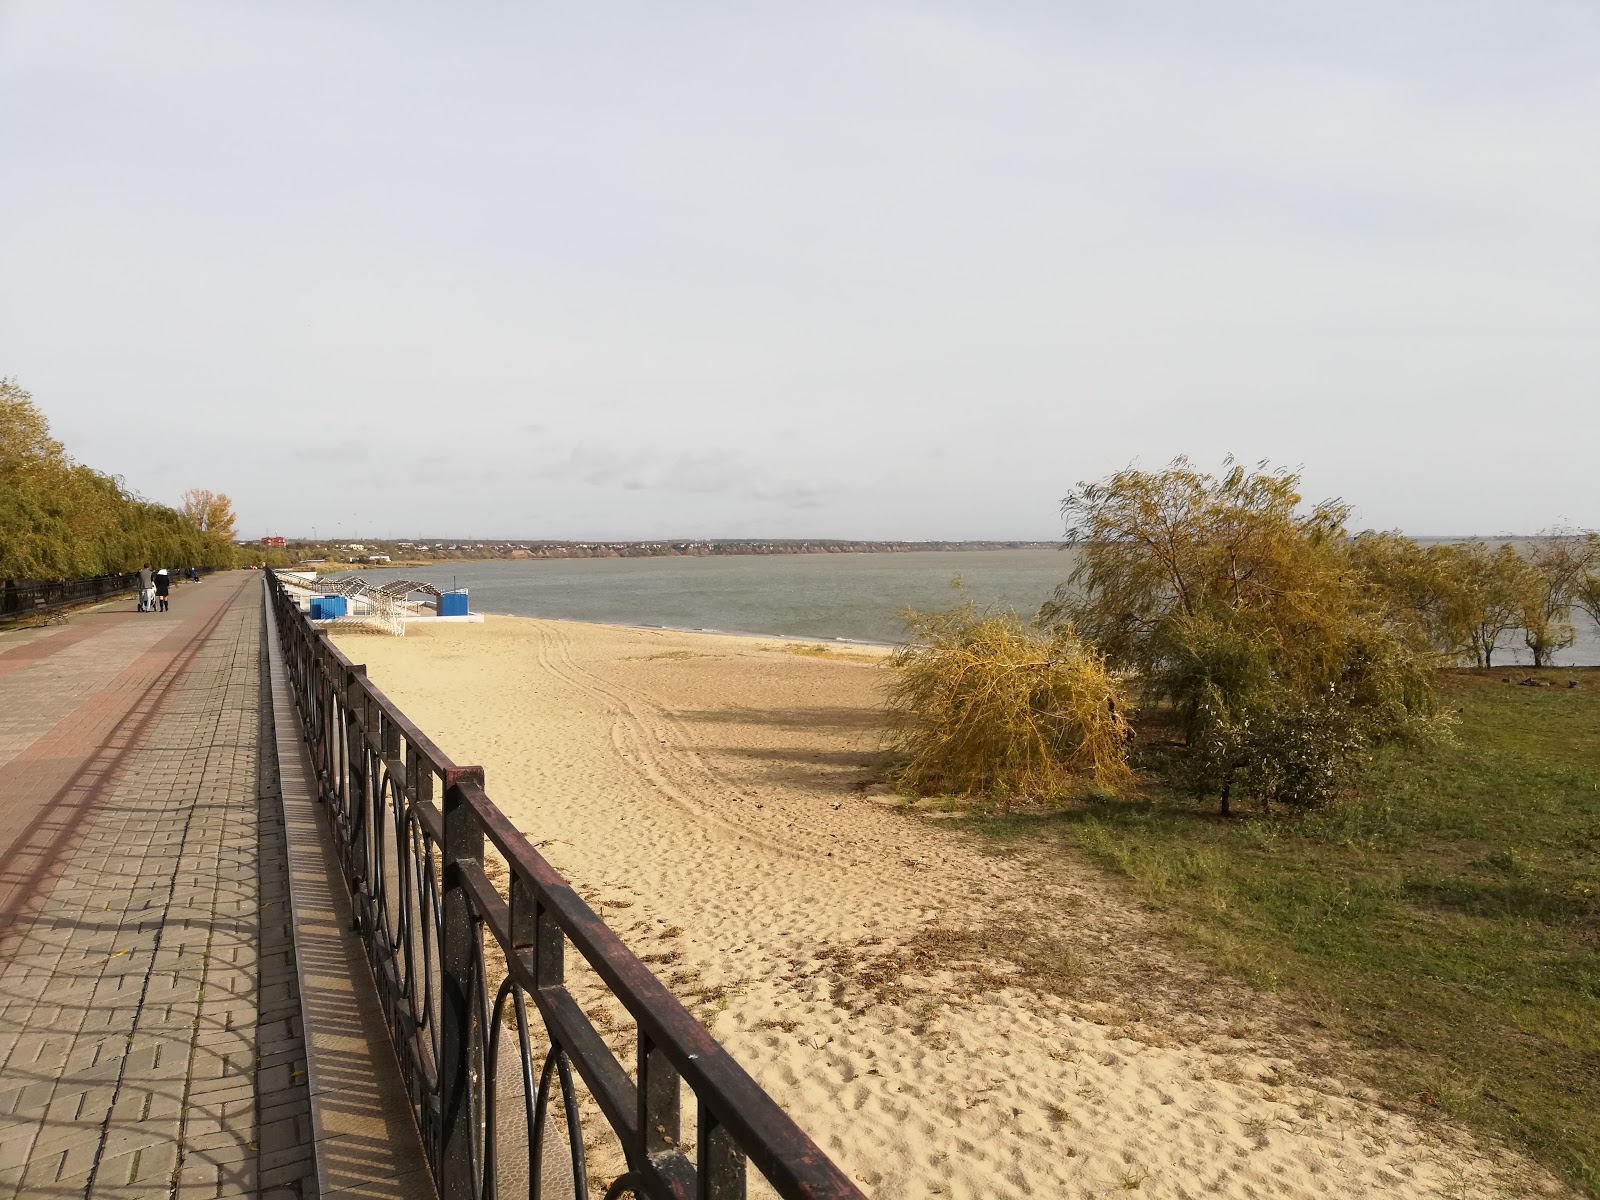 Plazh Taganrog II'in fotoğrafı vahşi alan